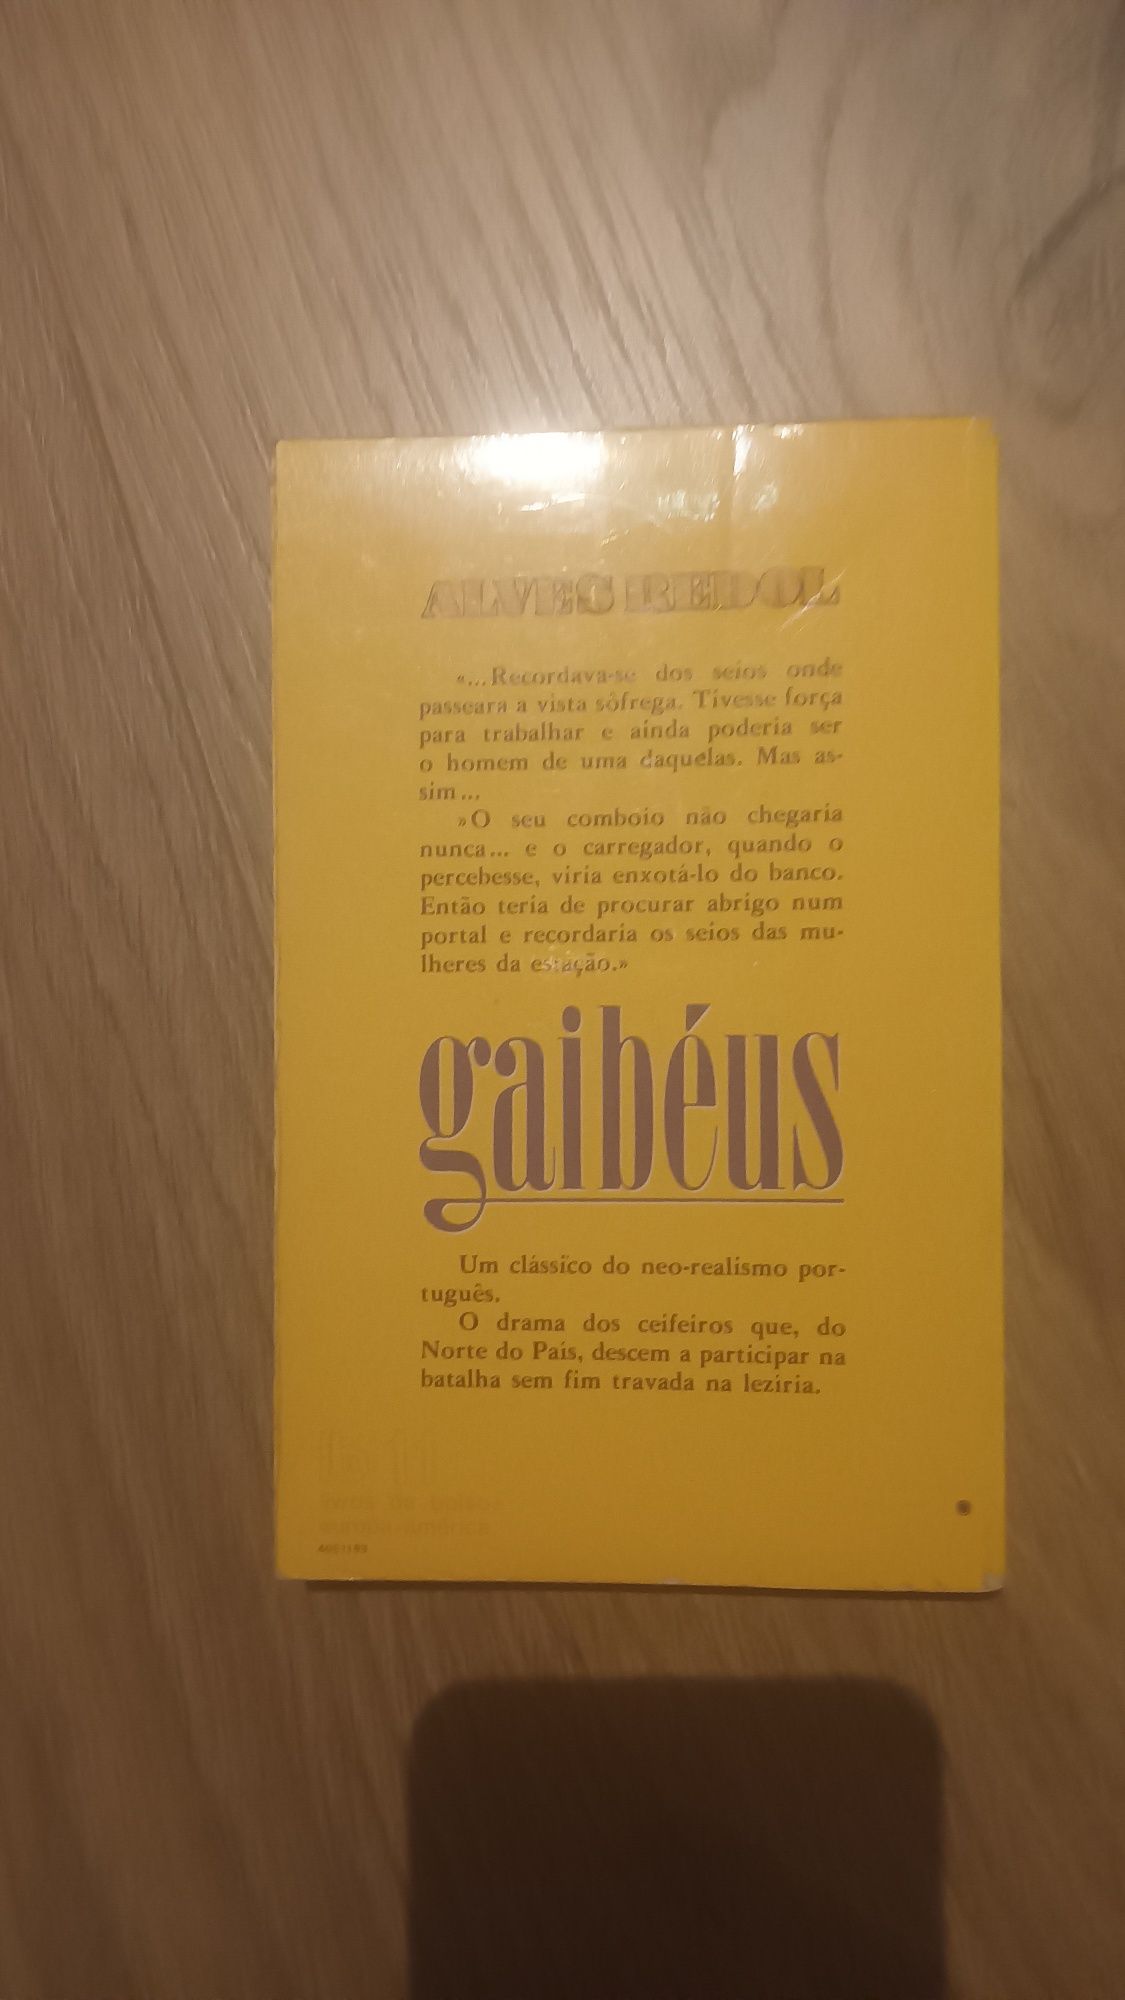 Gaibéus - Alves Redol